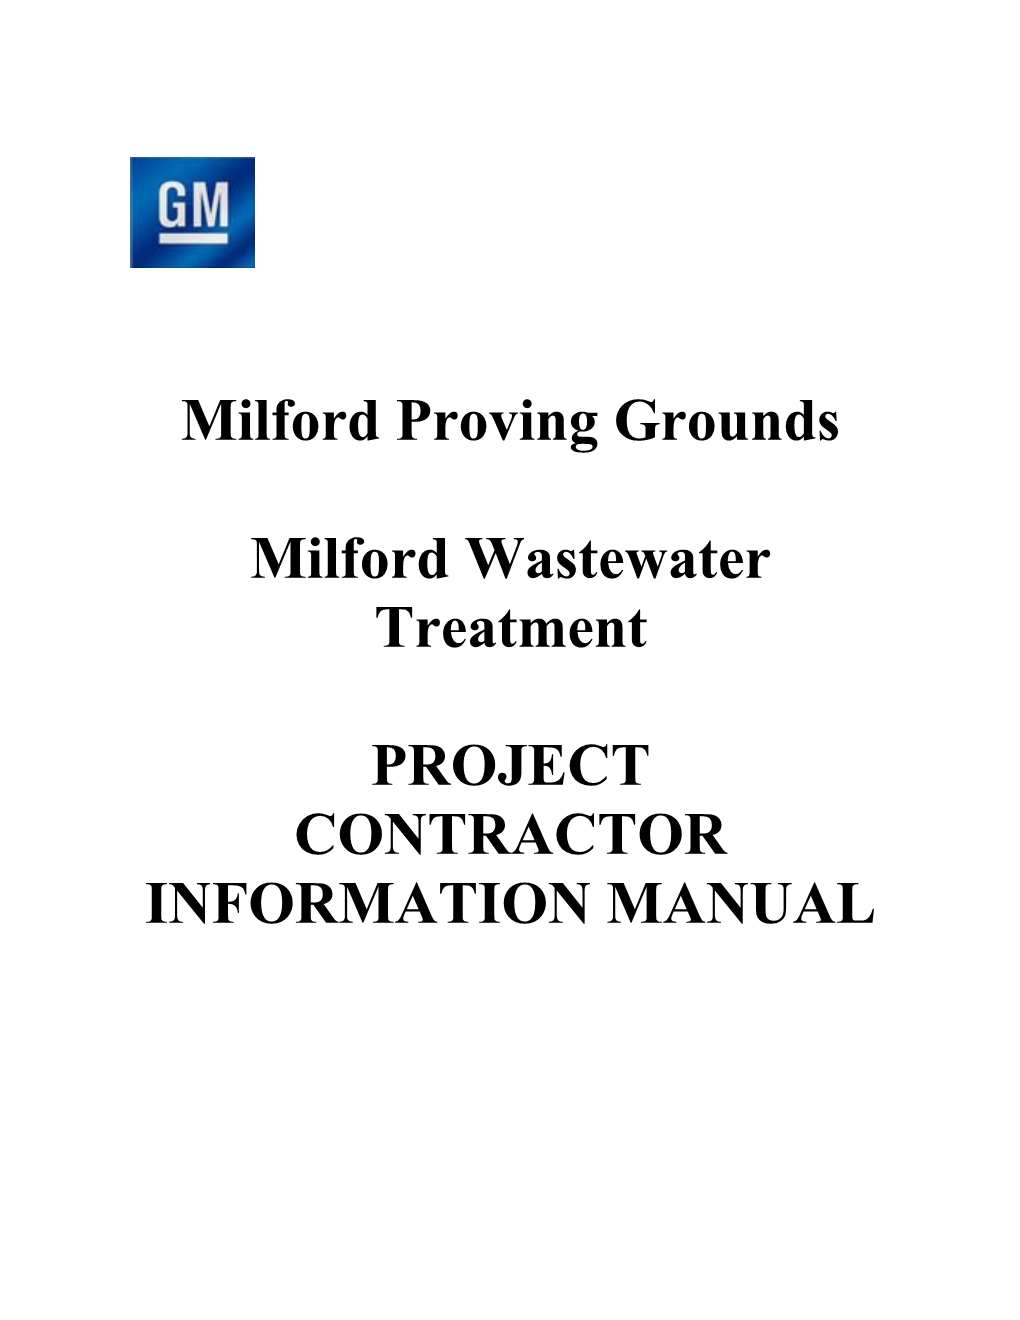 Contractor Information Manual